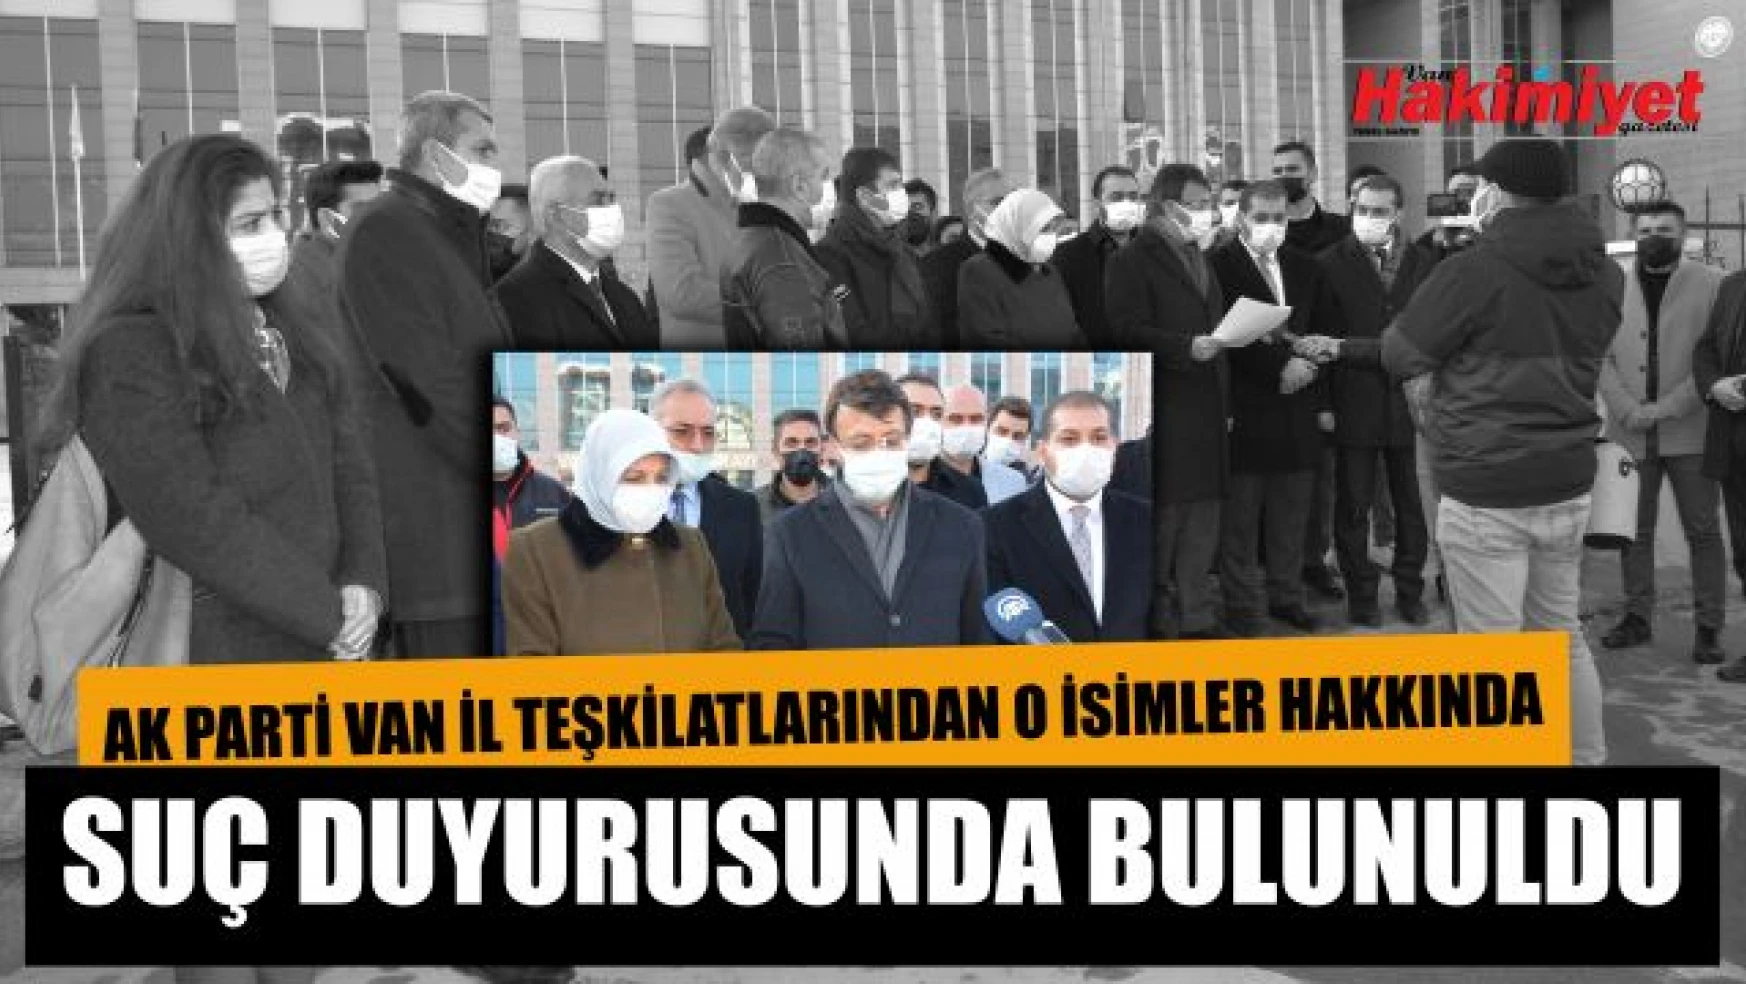 Türkmenoğlu, darbe çığırtkanlığı yapan 3 isim hakkında suç duyurusunda bulundu